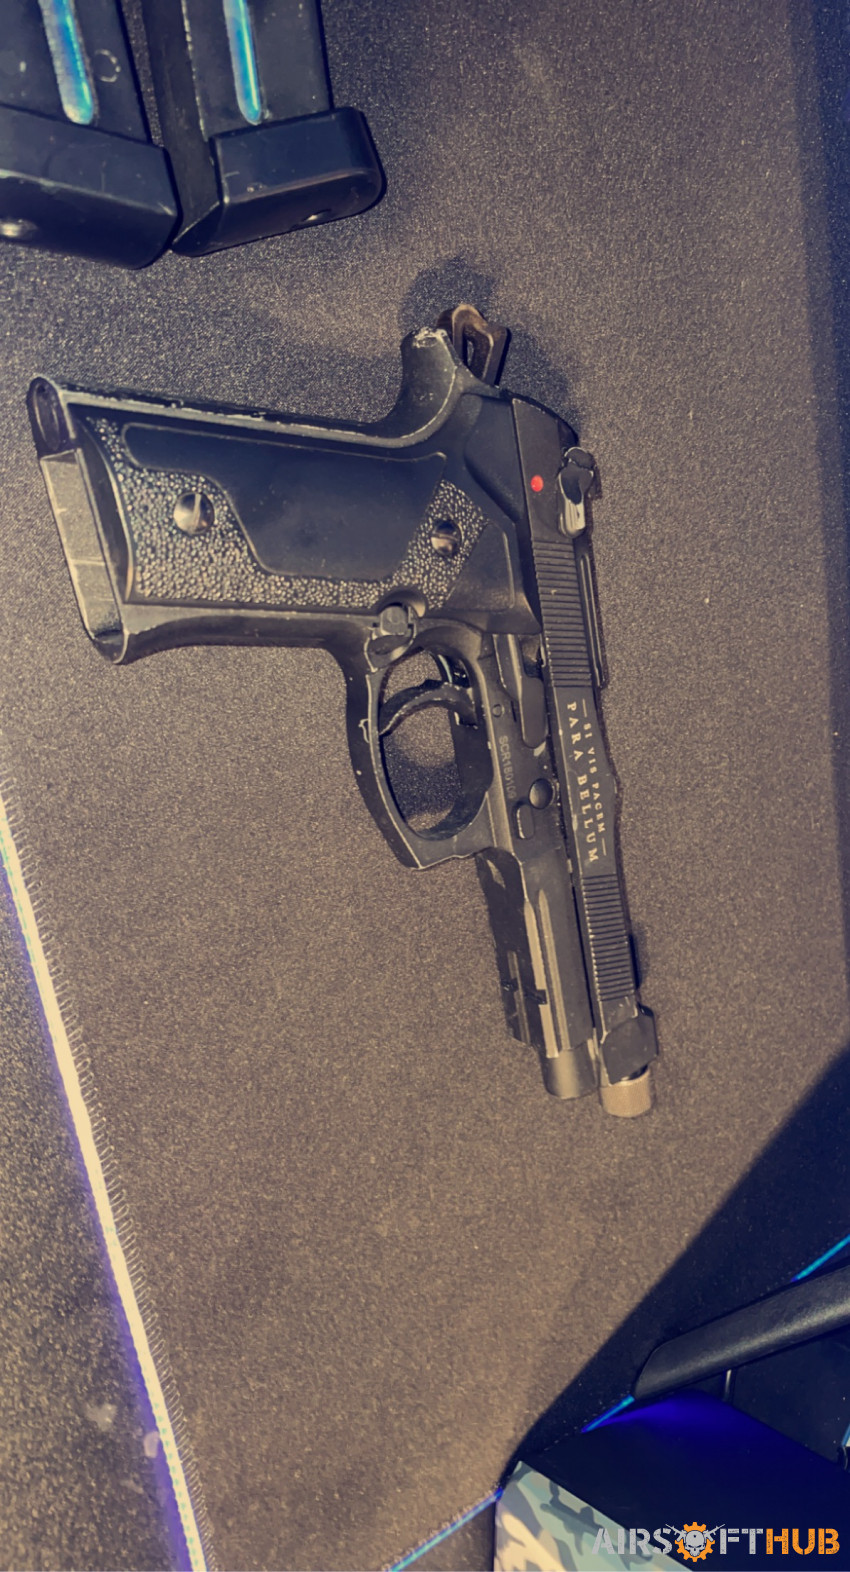 M9 Gas Bellum X pistol - Used airsoft equipment